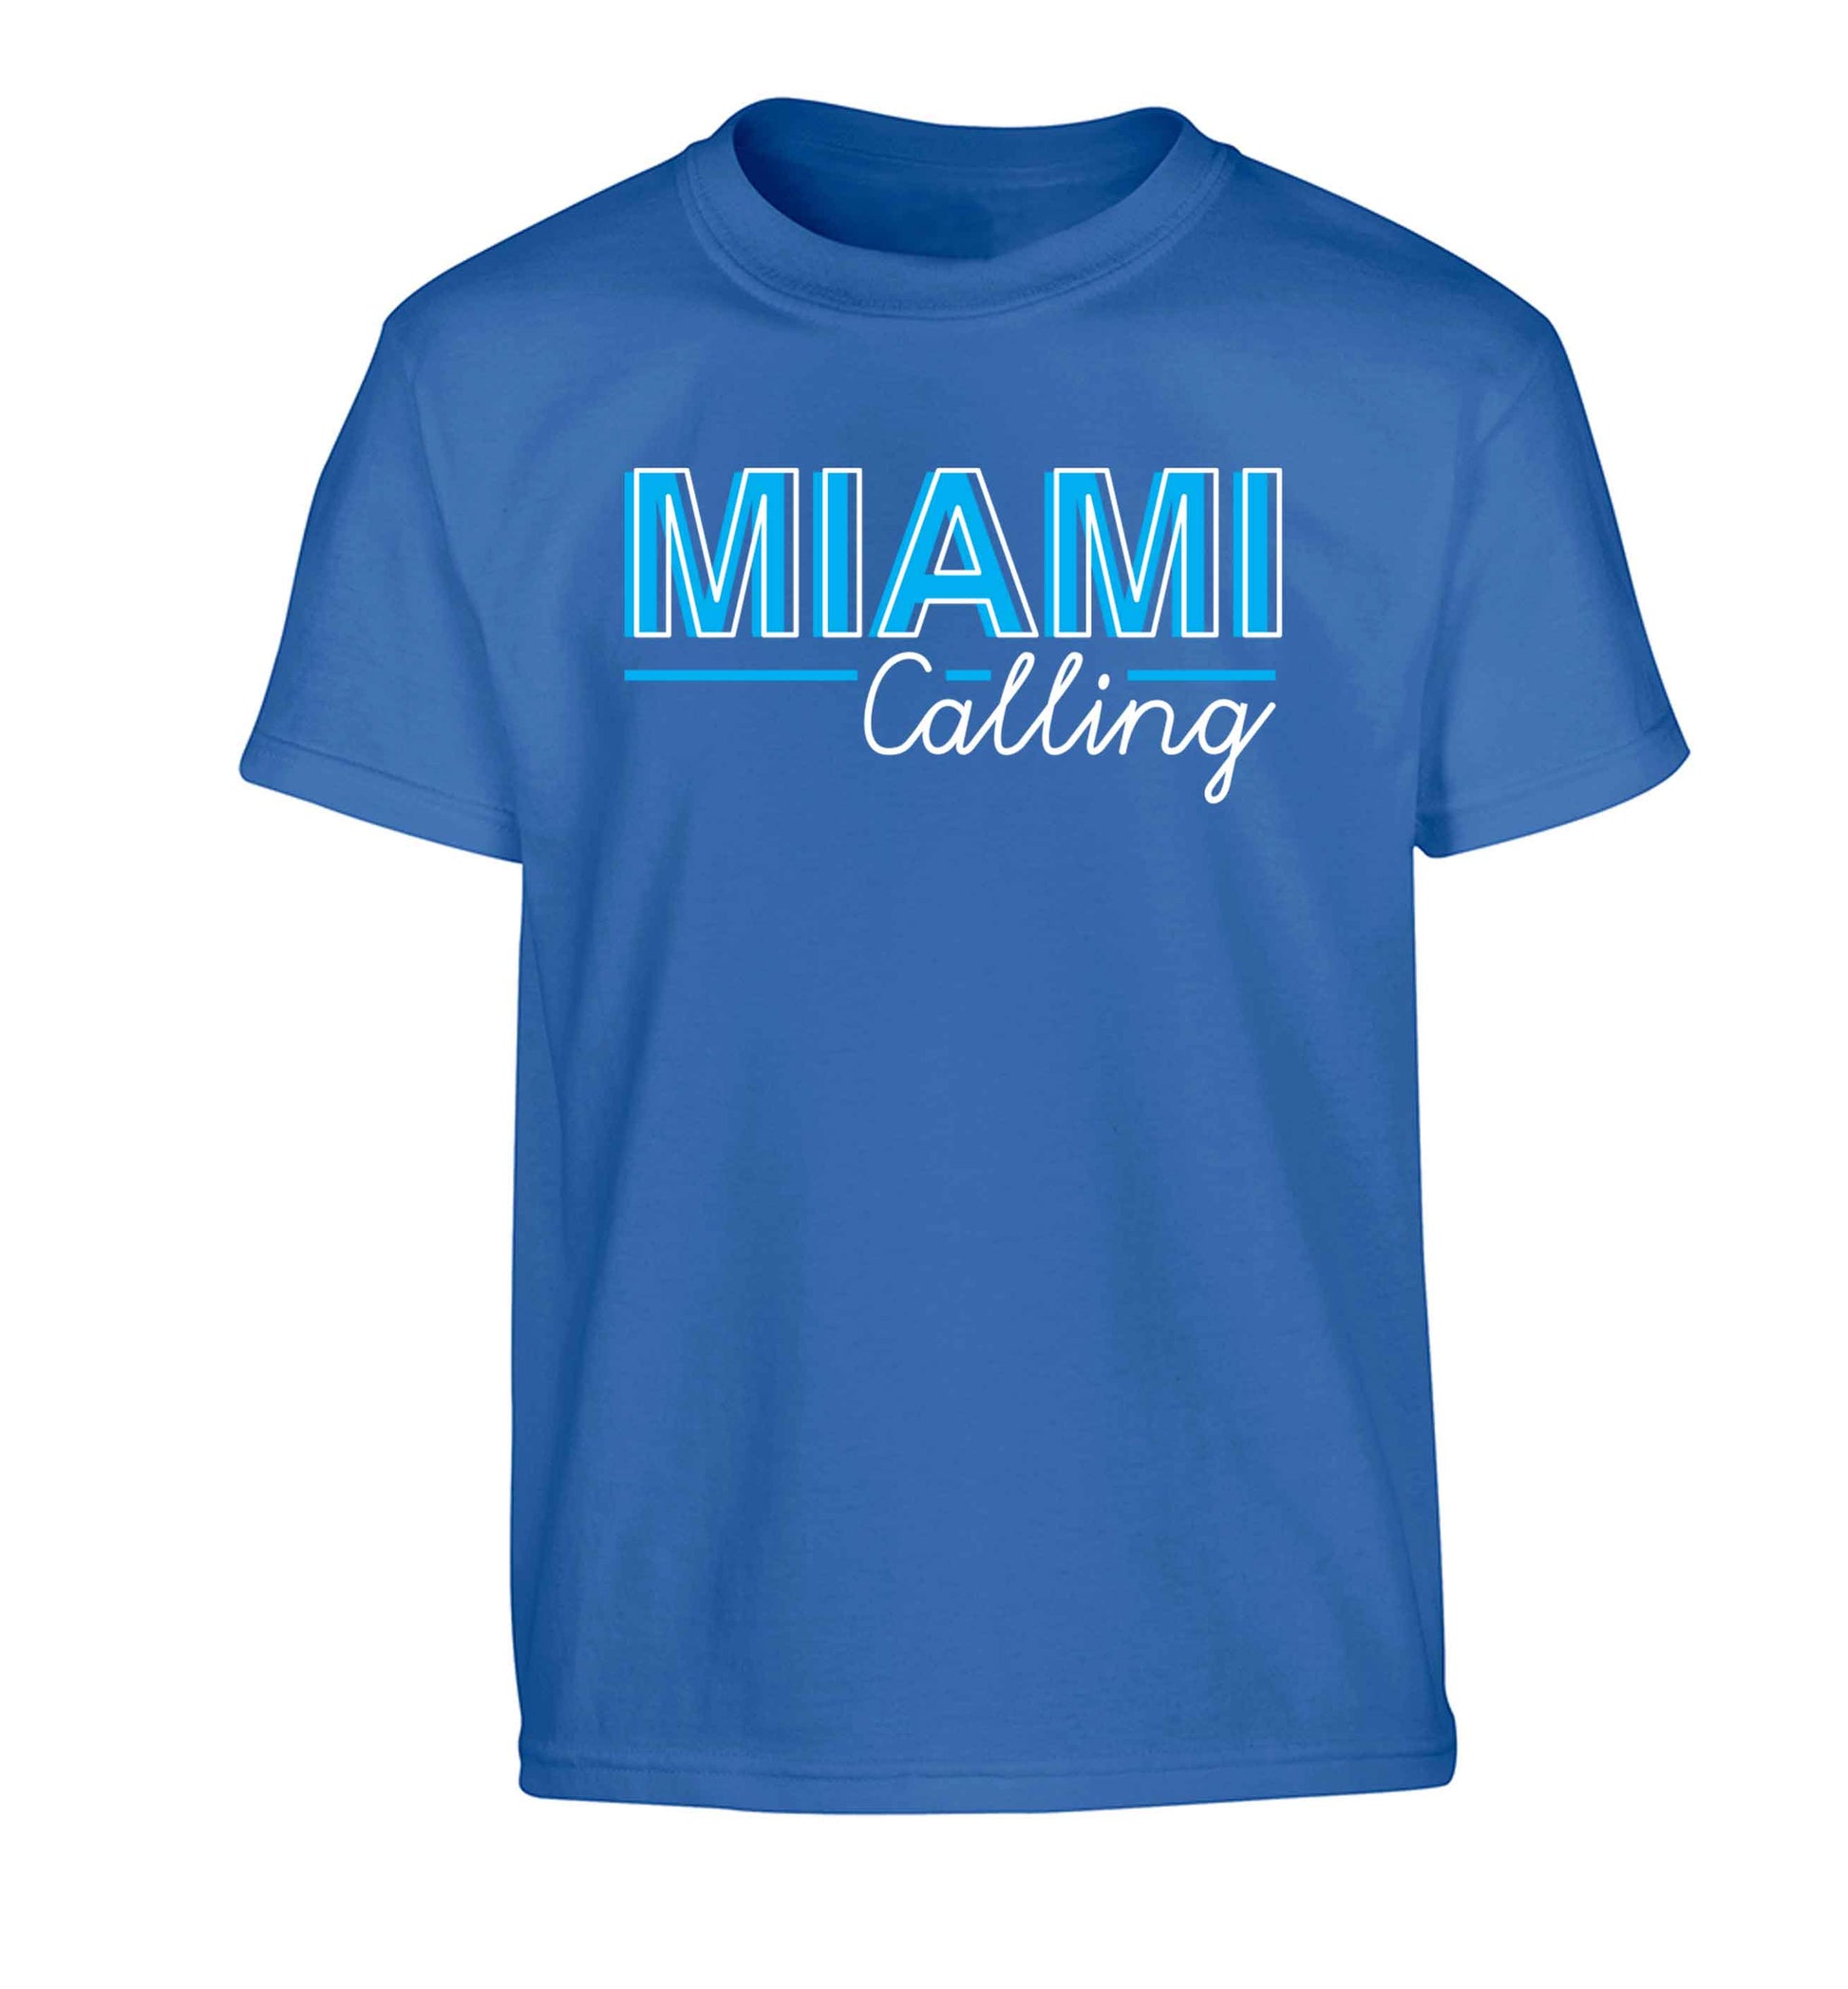 Miami calling Children's blue Tshirt 12-13 Years